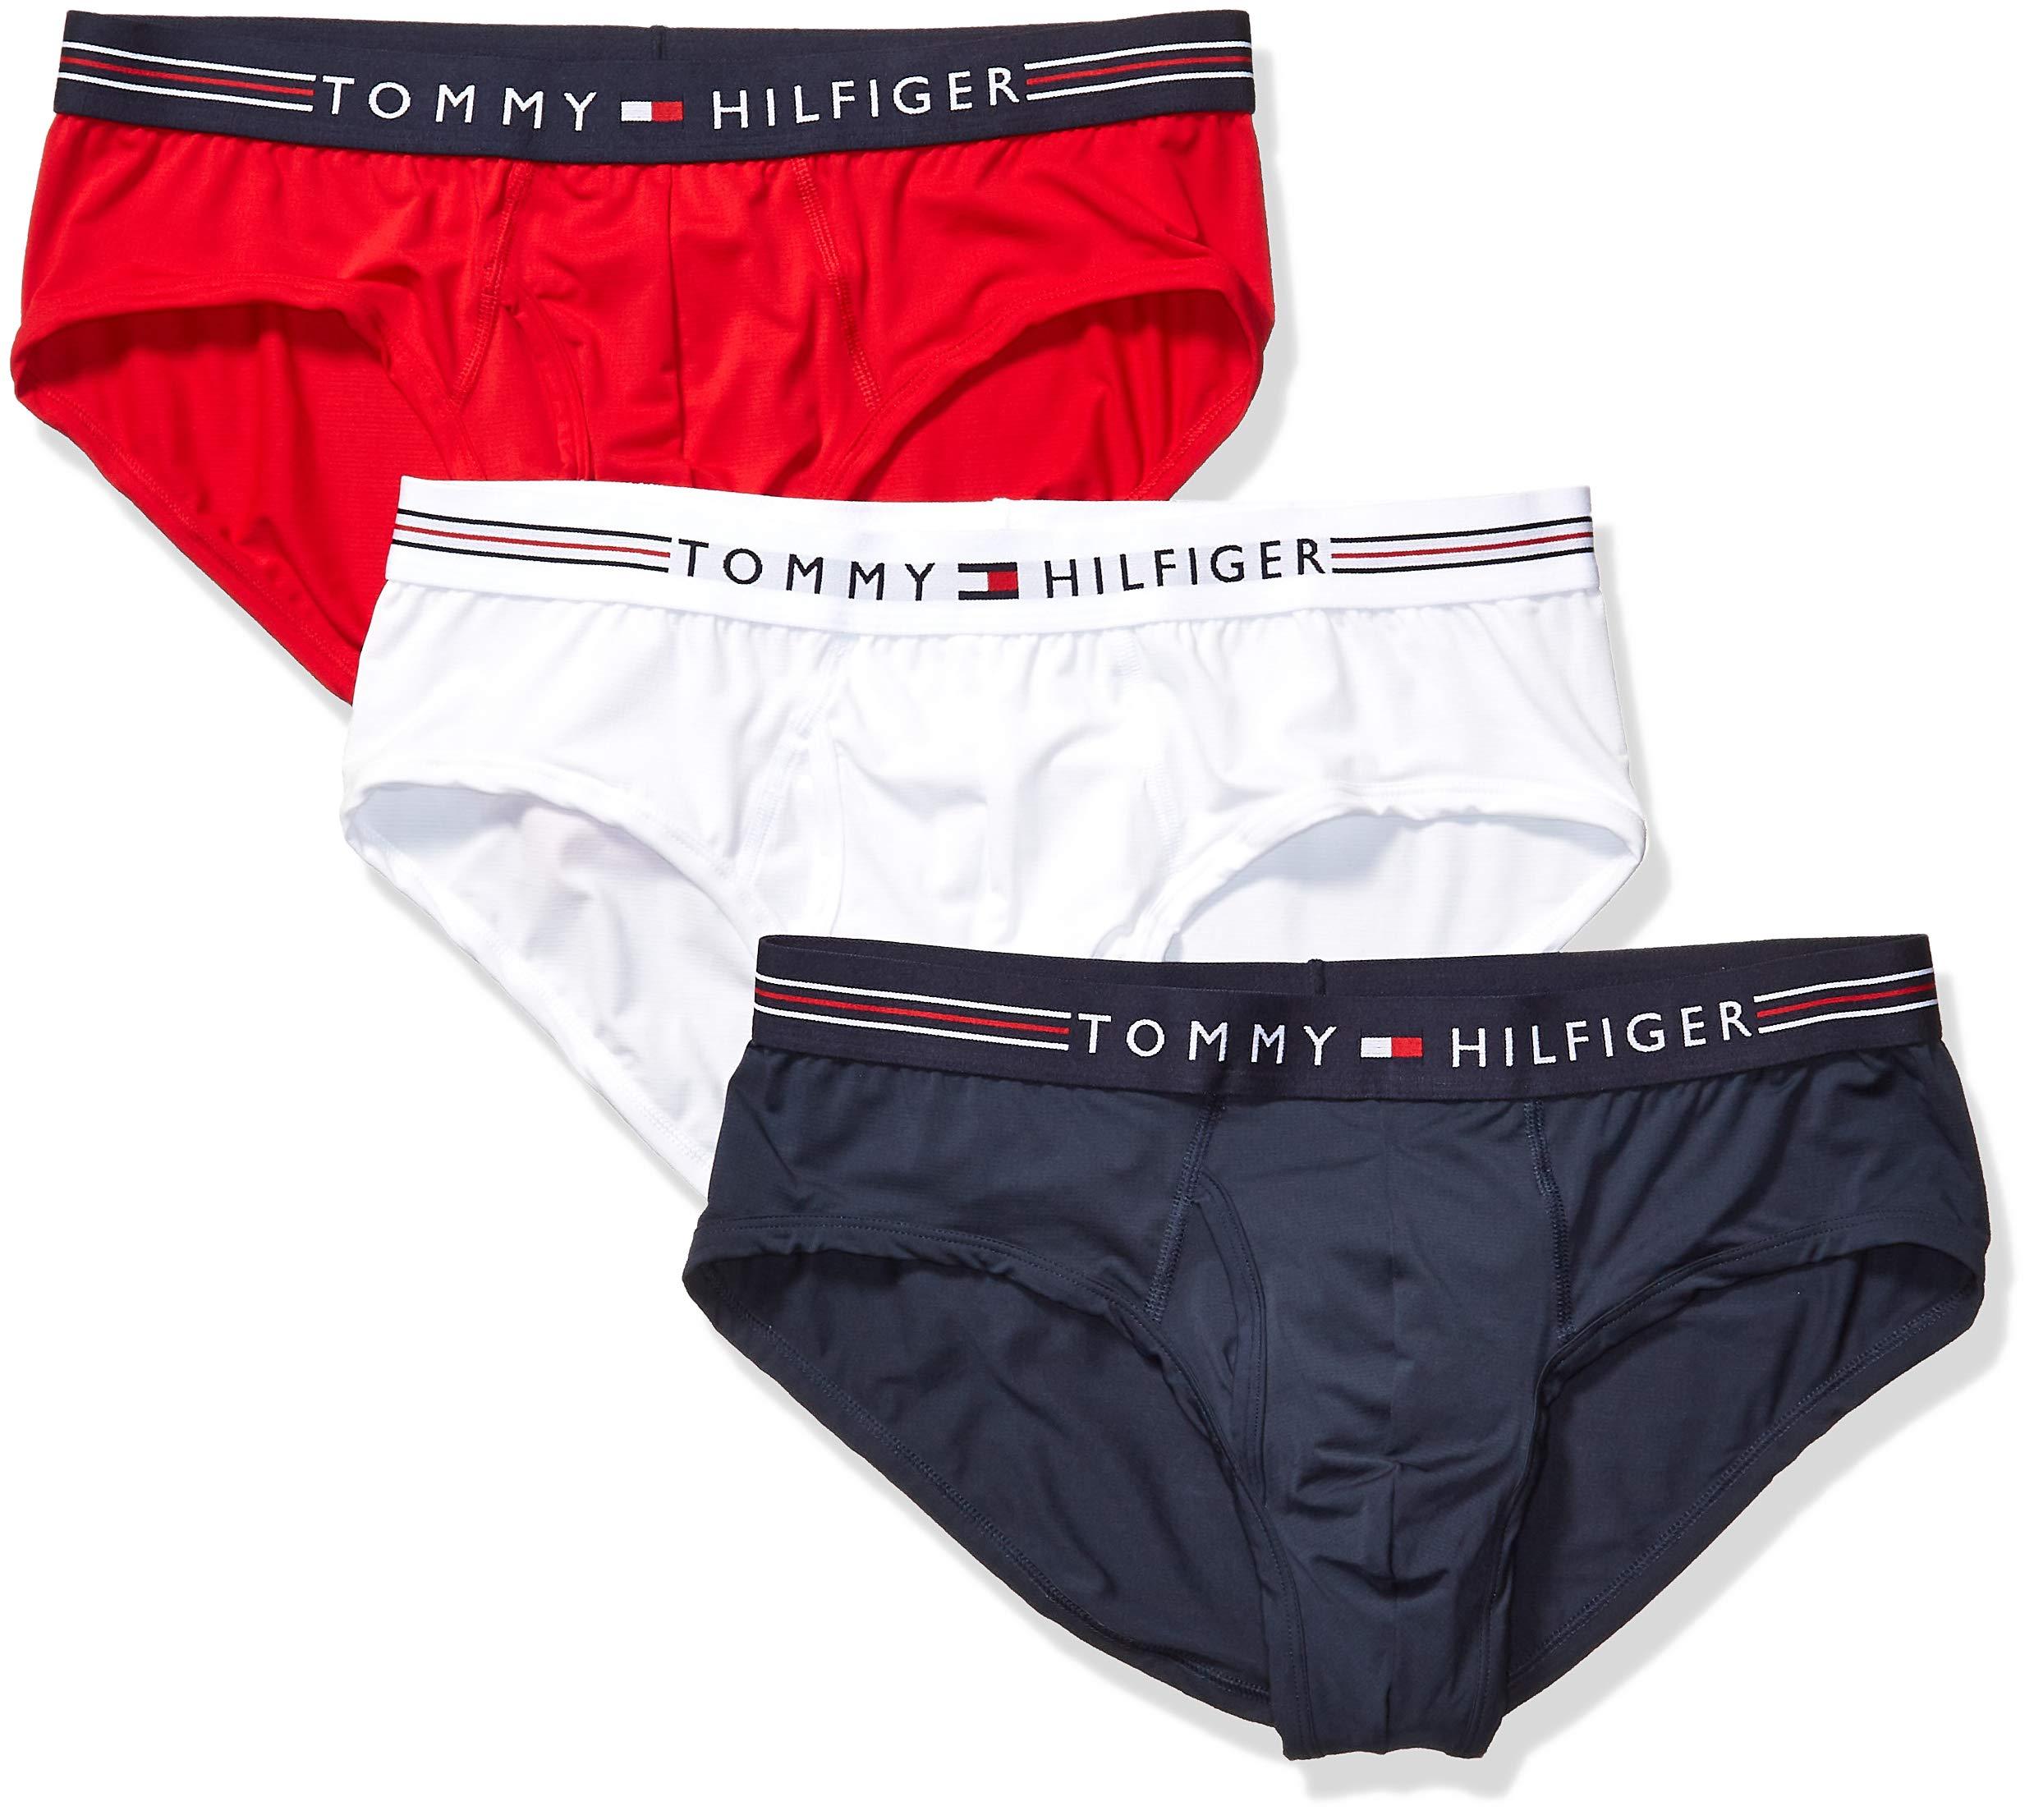 tommy hilfiger brief underwear